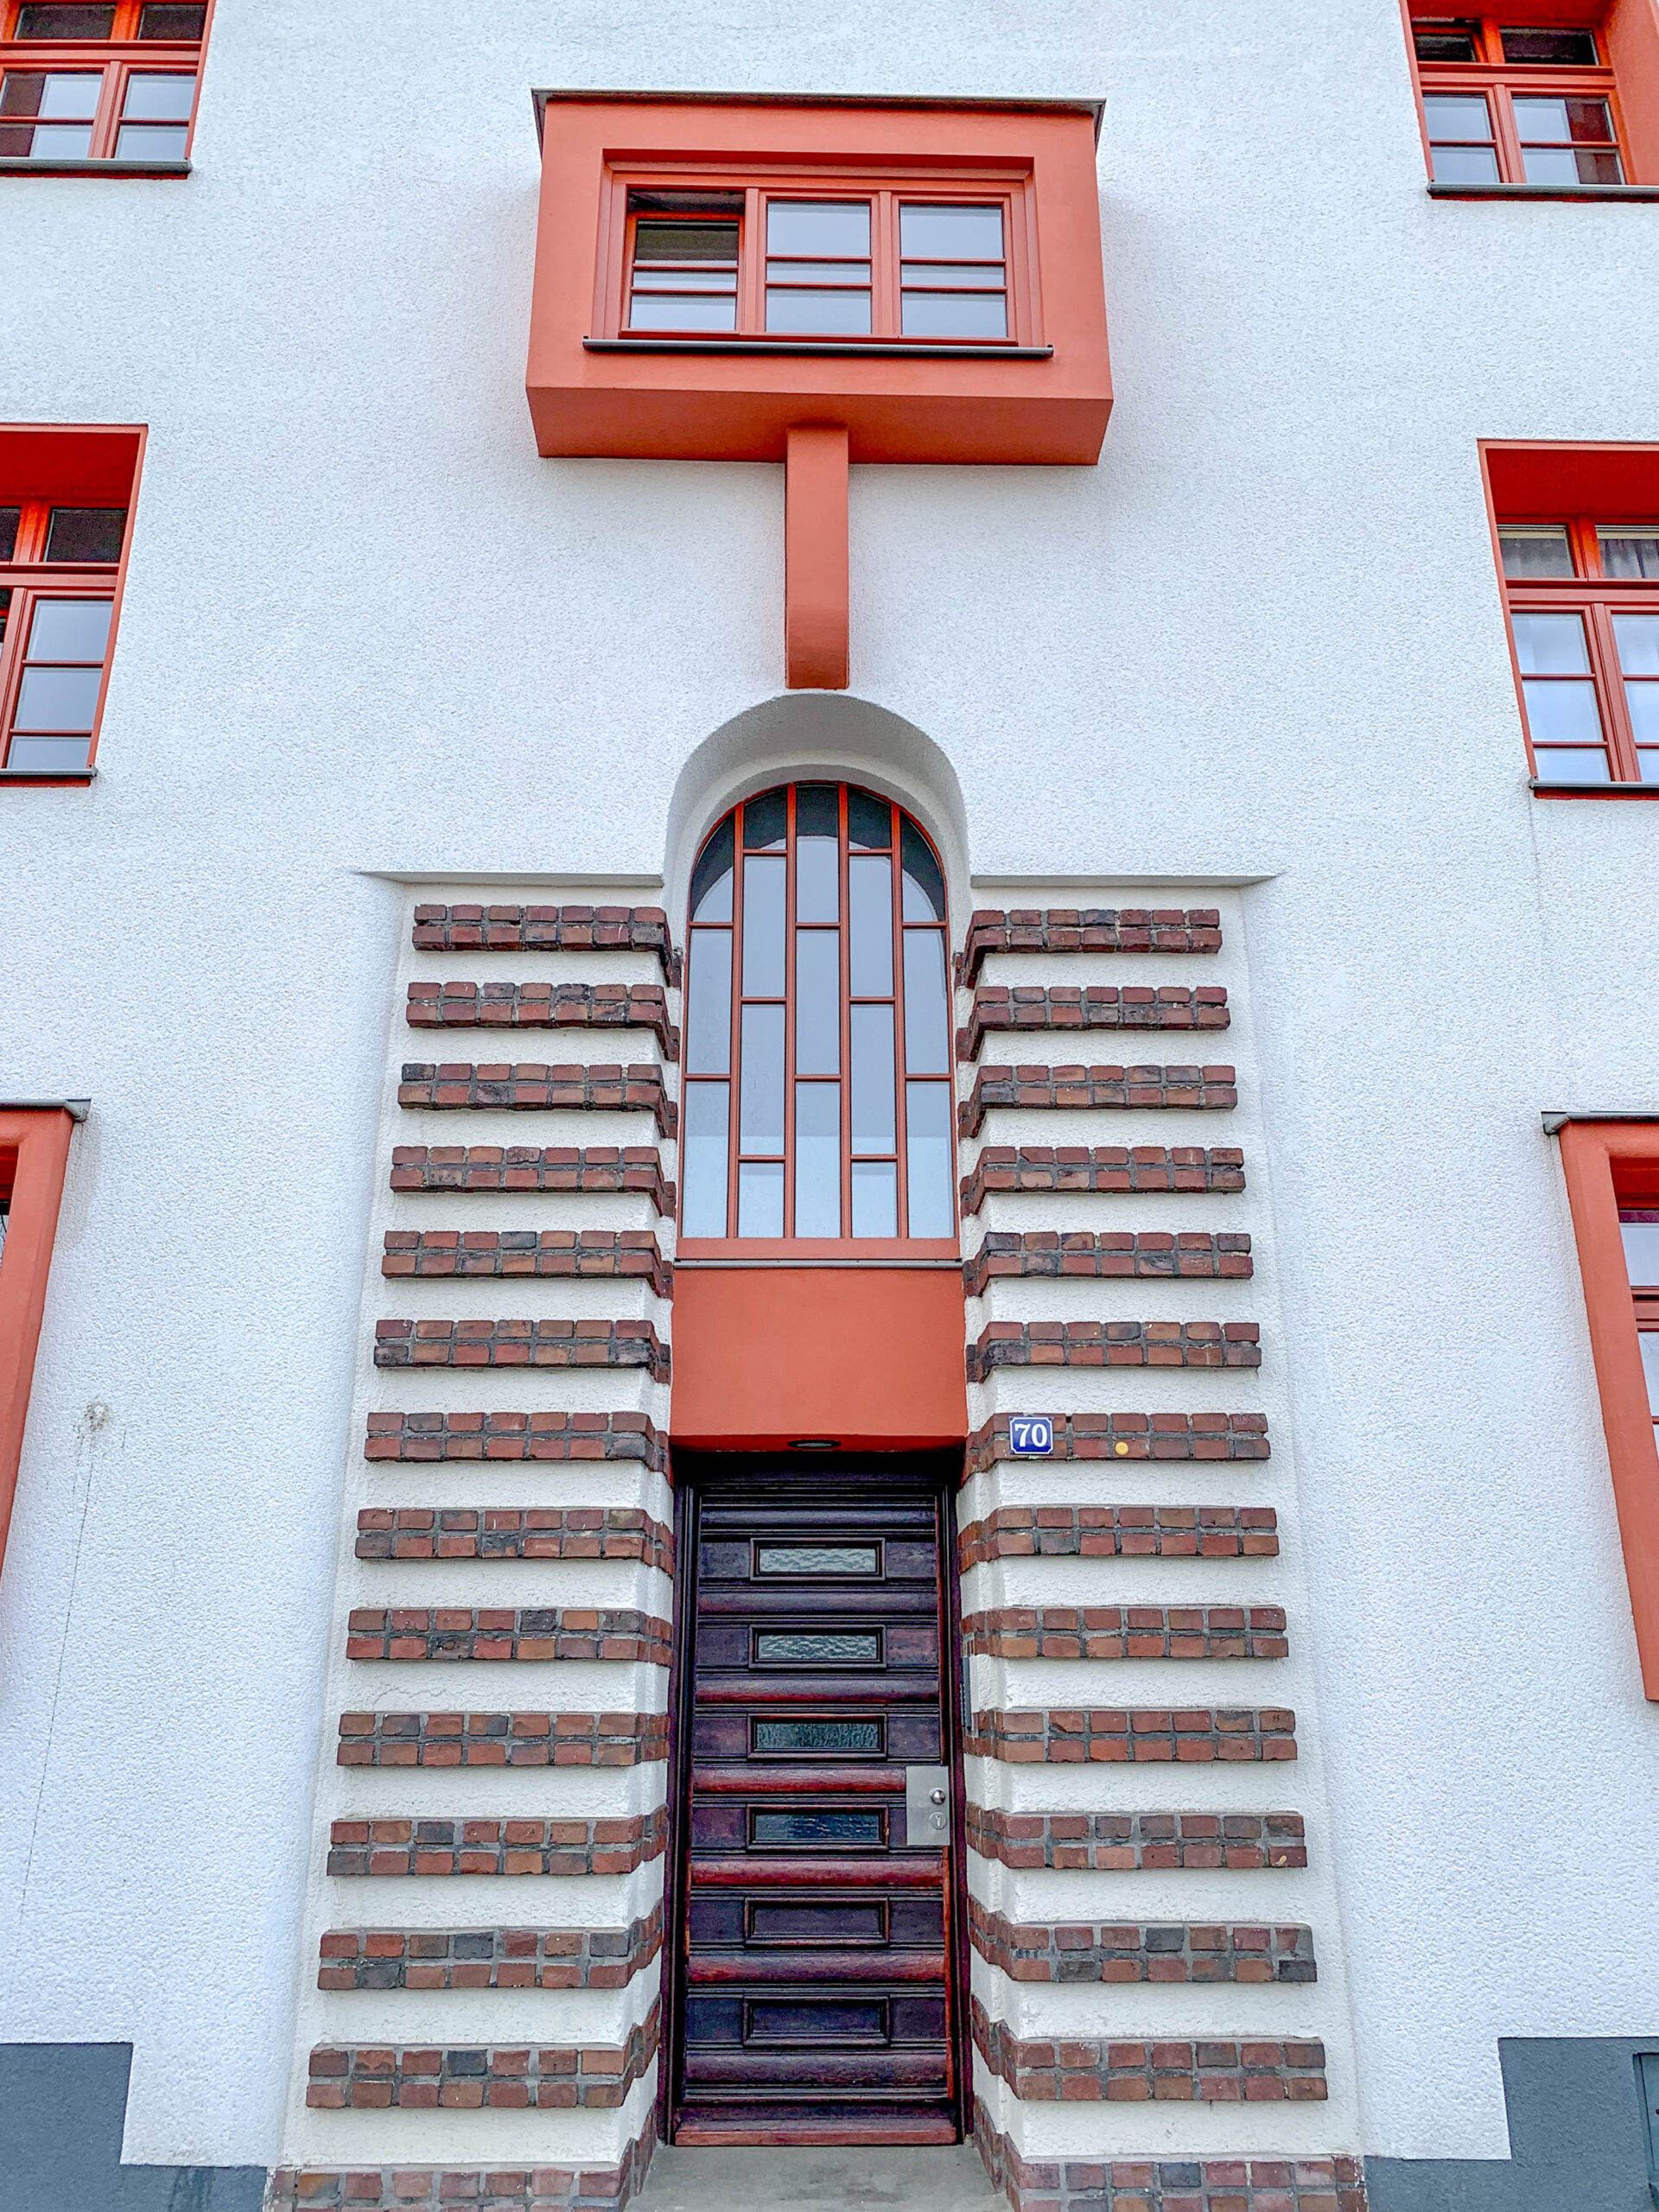 Naumann Siedlung, 1927-1929. Architects: Manfred Faber, Otto Scheib, Fritz Fuß, Hans Heinz Lüttgen